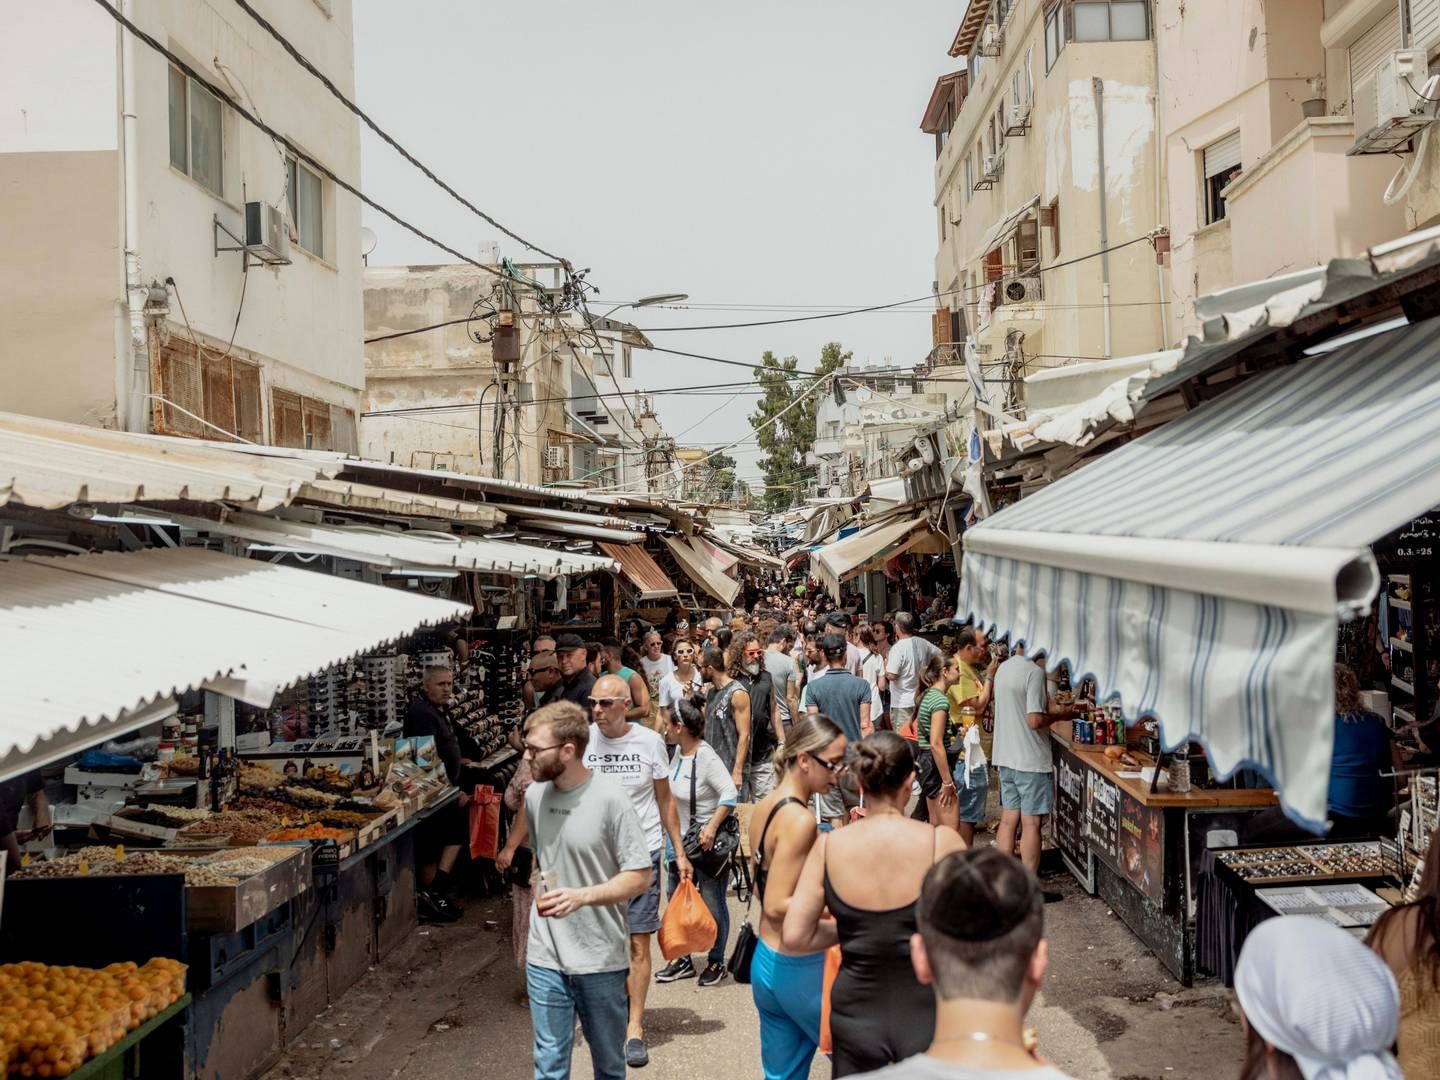 Marked og mennesker i Tel Aviv i Israel, hvor flere danske detailkæder som Pandora og Flying Tiger har aktiviteter. | Foto: Christian Falck Wolff // Politiken